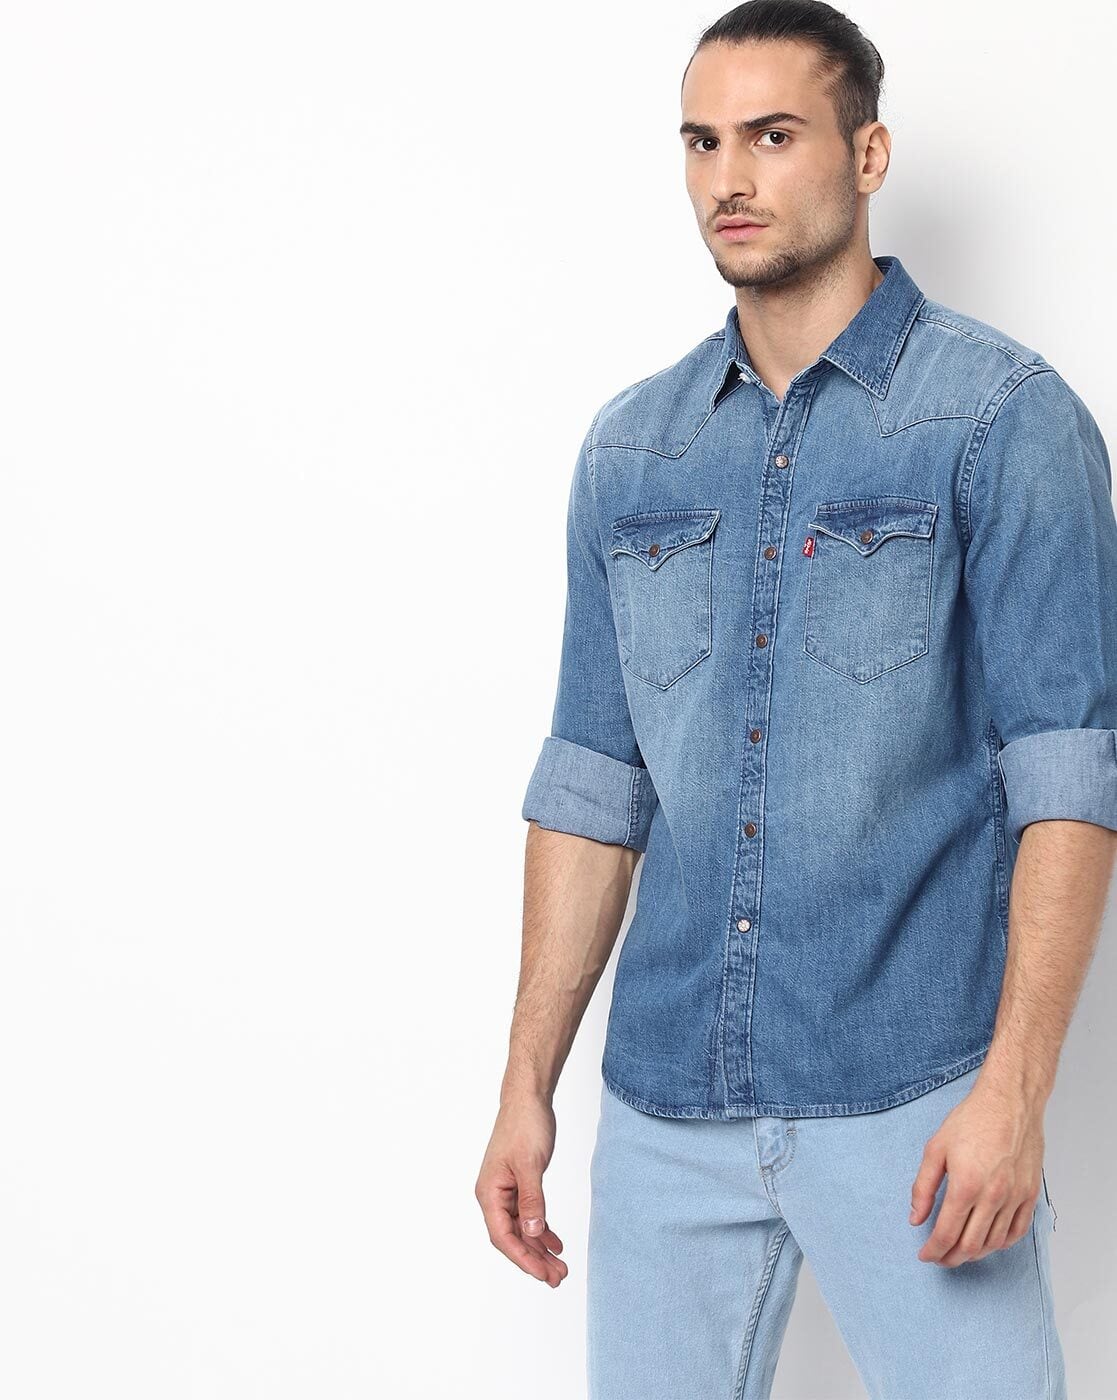 Levi's: Buy Levi's Jeans for Men & Women Online at Tata CLiQ